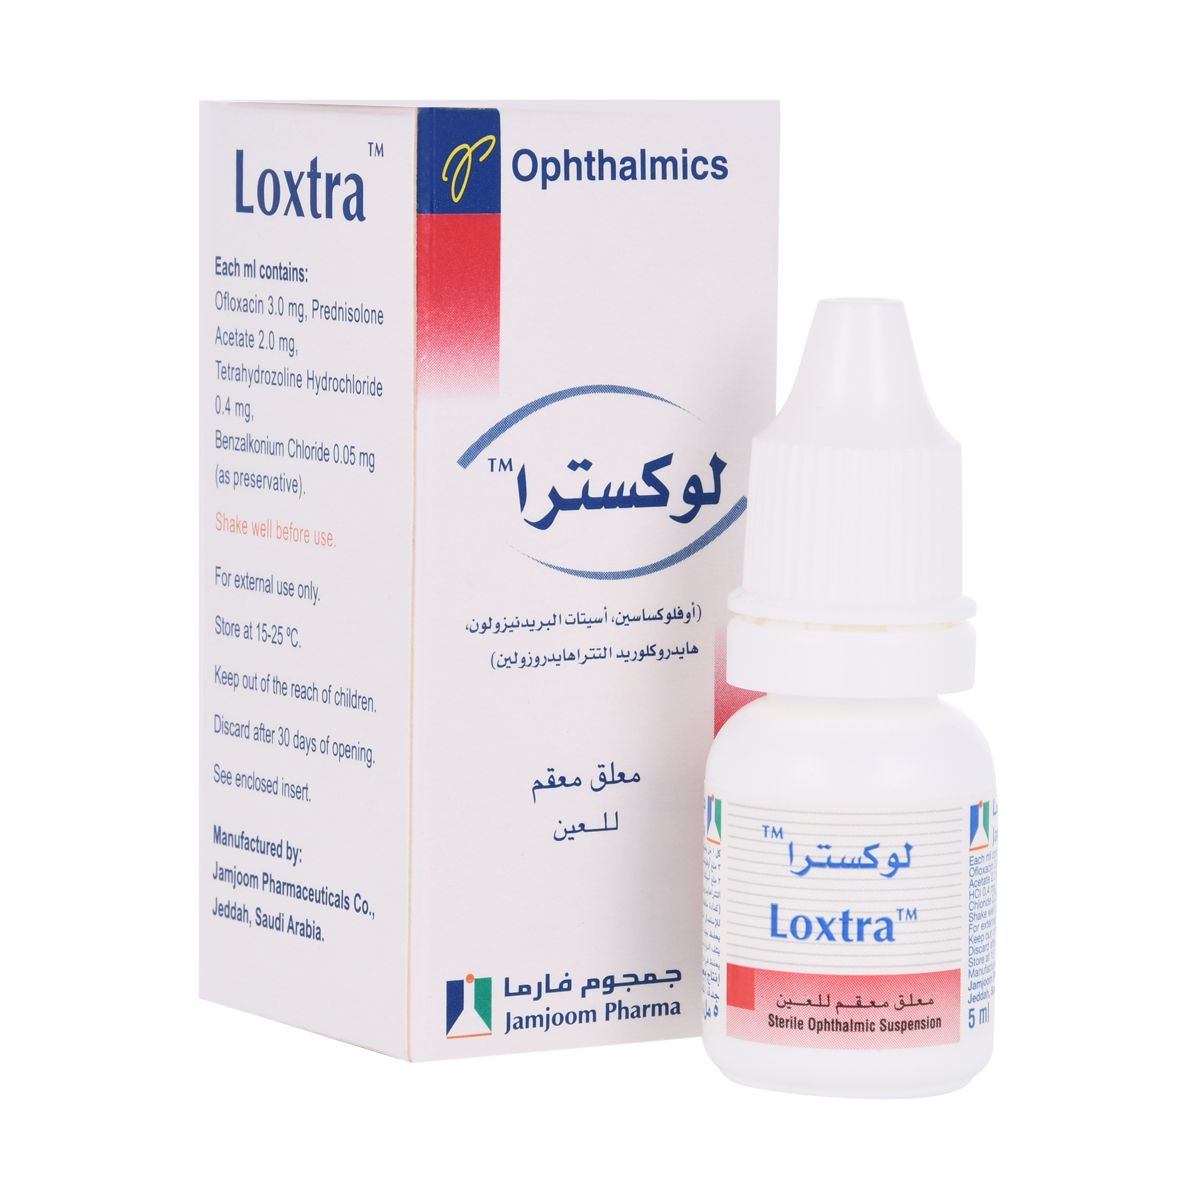 LOXTRA Loxtra eye drop 5ml